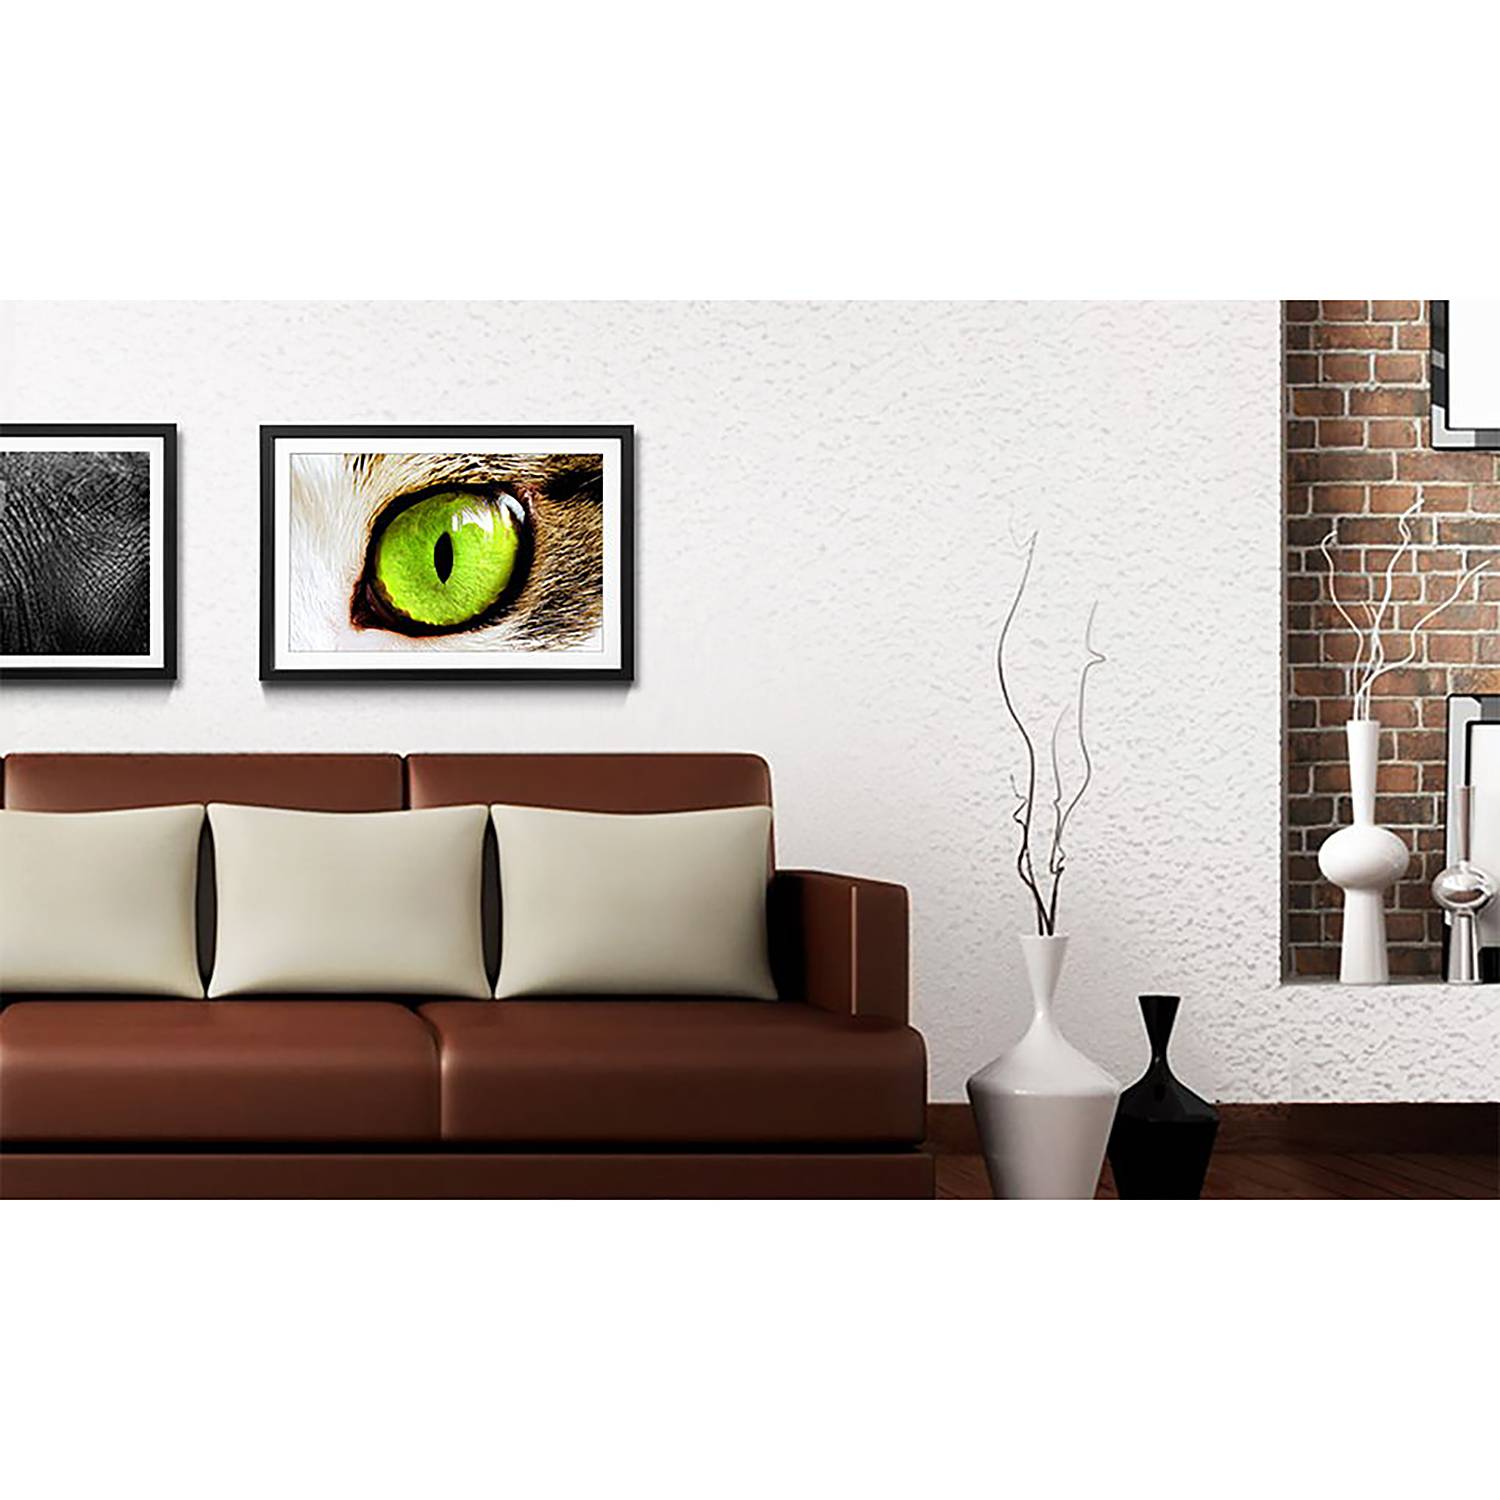 Gerahmtes Bild Cats Eye Green II von WandbilderXXL